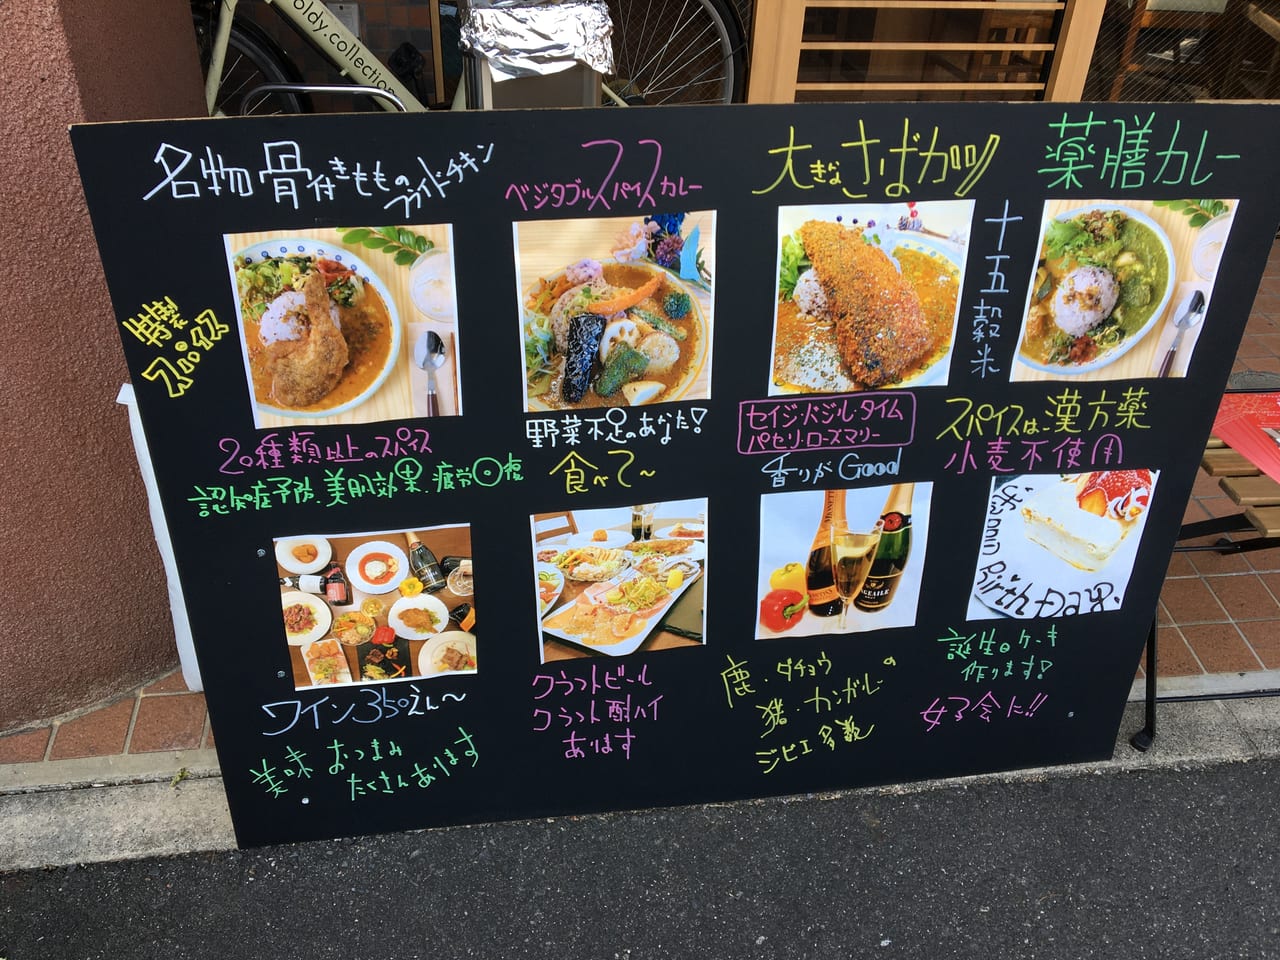 名古屋市東区 こんなところにスパイシーなカレーがいただけるすてきなカフェが Curry Quiche Bar たかおかcafe が10月にオープンしていました 号外net 名古屋市北区 東区